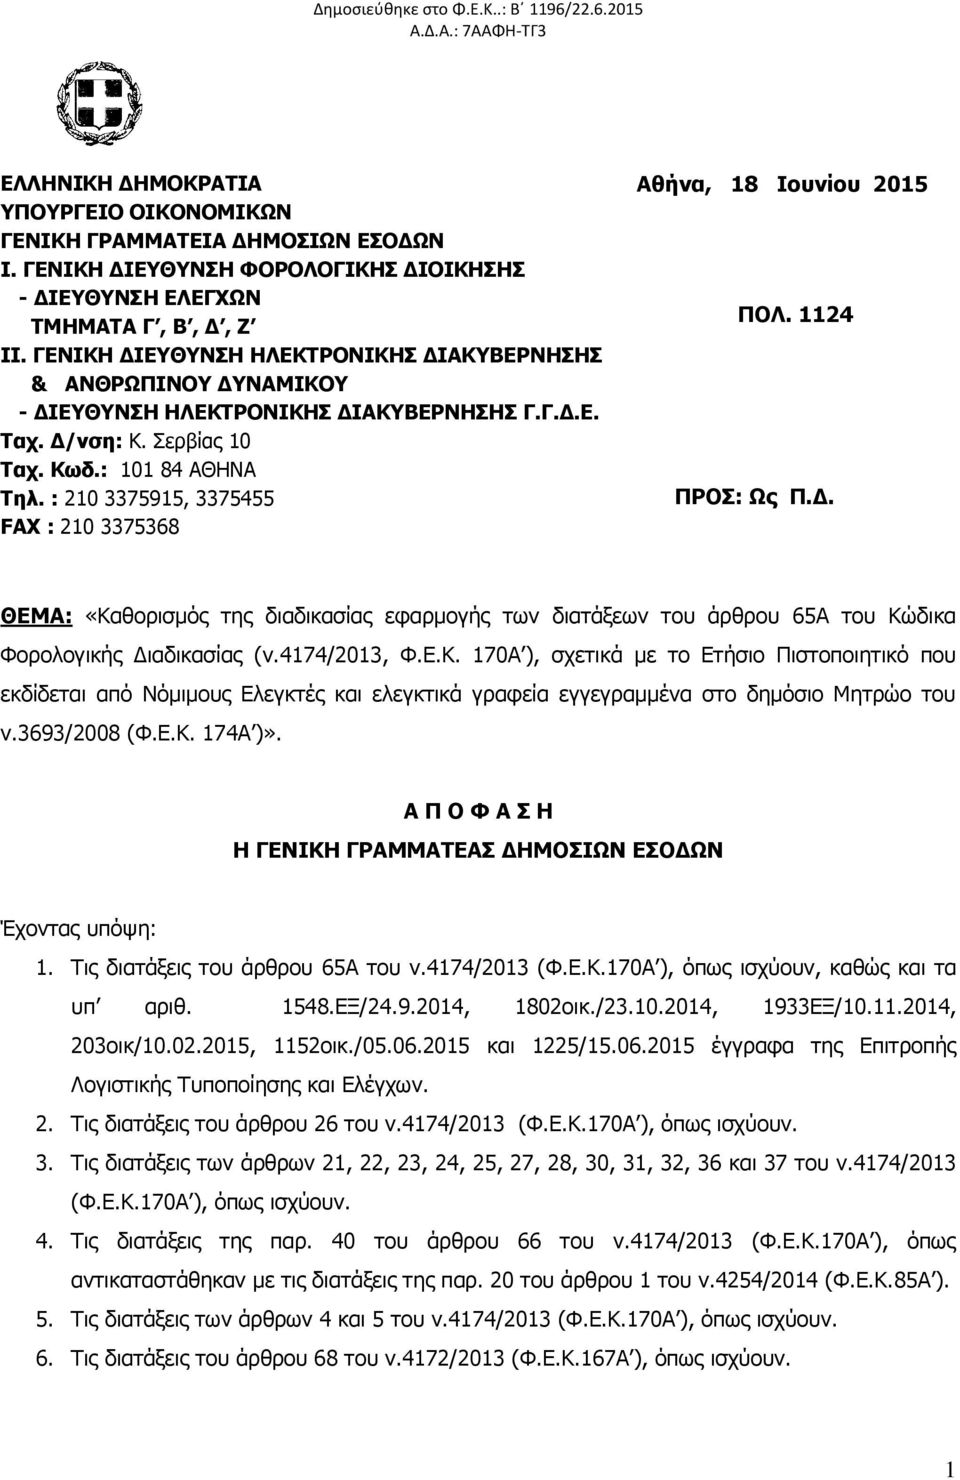 Δ/νση: Κ. Σερβίας 10 Ταχ. Κωδ.: 101 84 ΑΘΗΝΑ Τηλ. : 210 3375915, 3375455 FAX : 210 3375368 Αθήνα, 18 Ιουνίου 2015 ΠΟΛ. 1124 ΠΡΟΣ: Ως Π.Δ. ΘΕΜΑ: «Καθορισμός της διαδικασίας εφαρμογής των διατάξεων του άρθρου 65Α του Κώδικα Φορολογικής Διαδικασίας (ν.